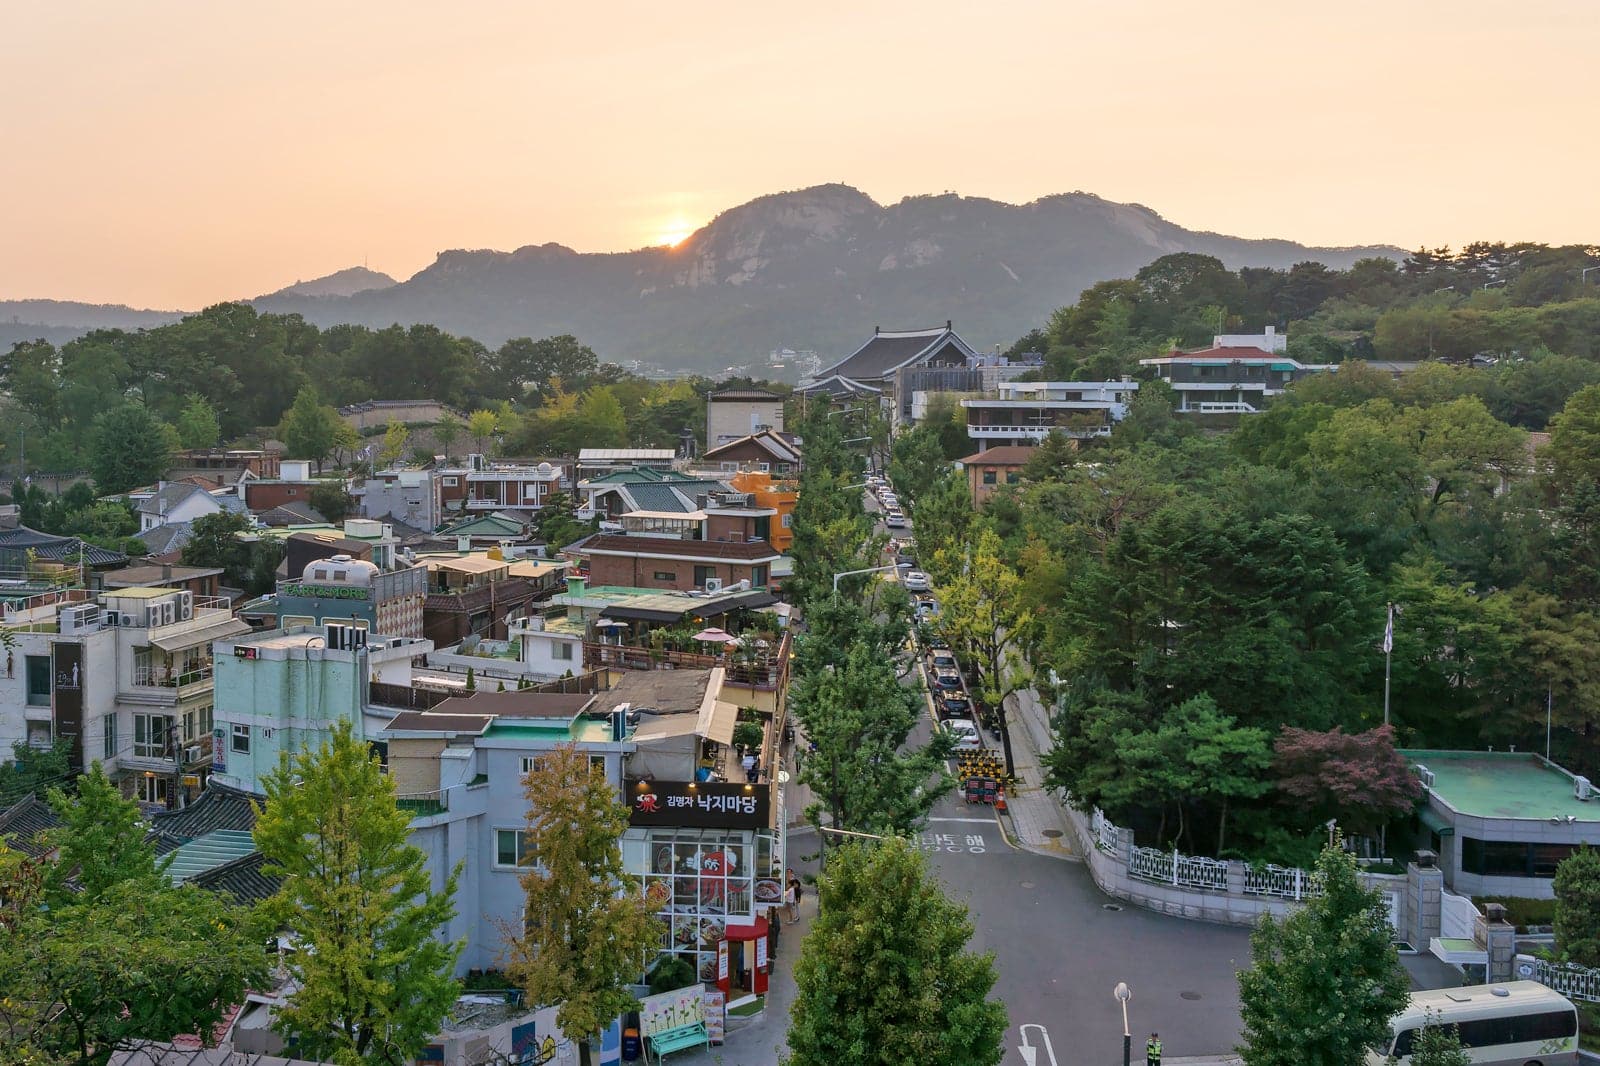 Samcheong-dong